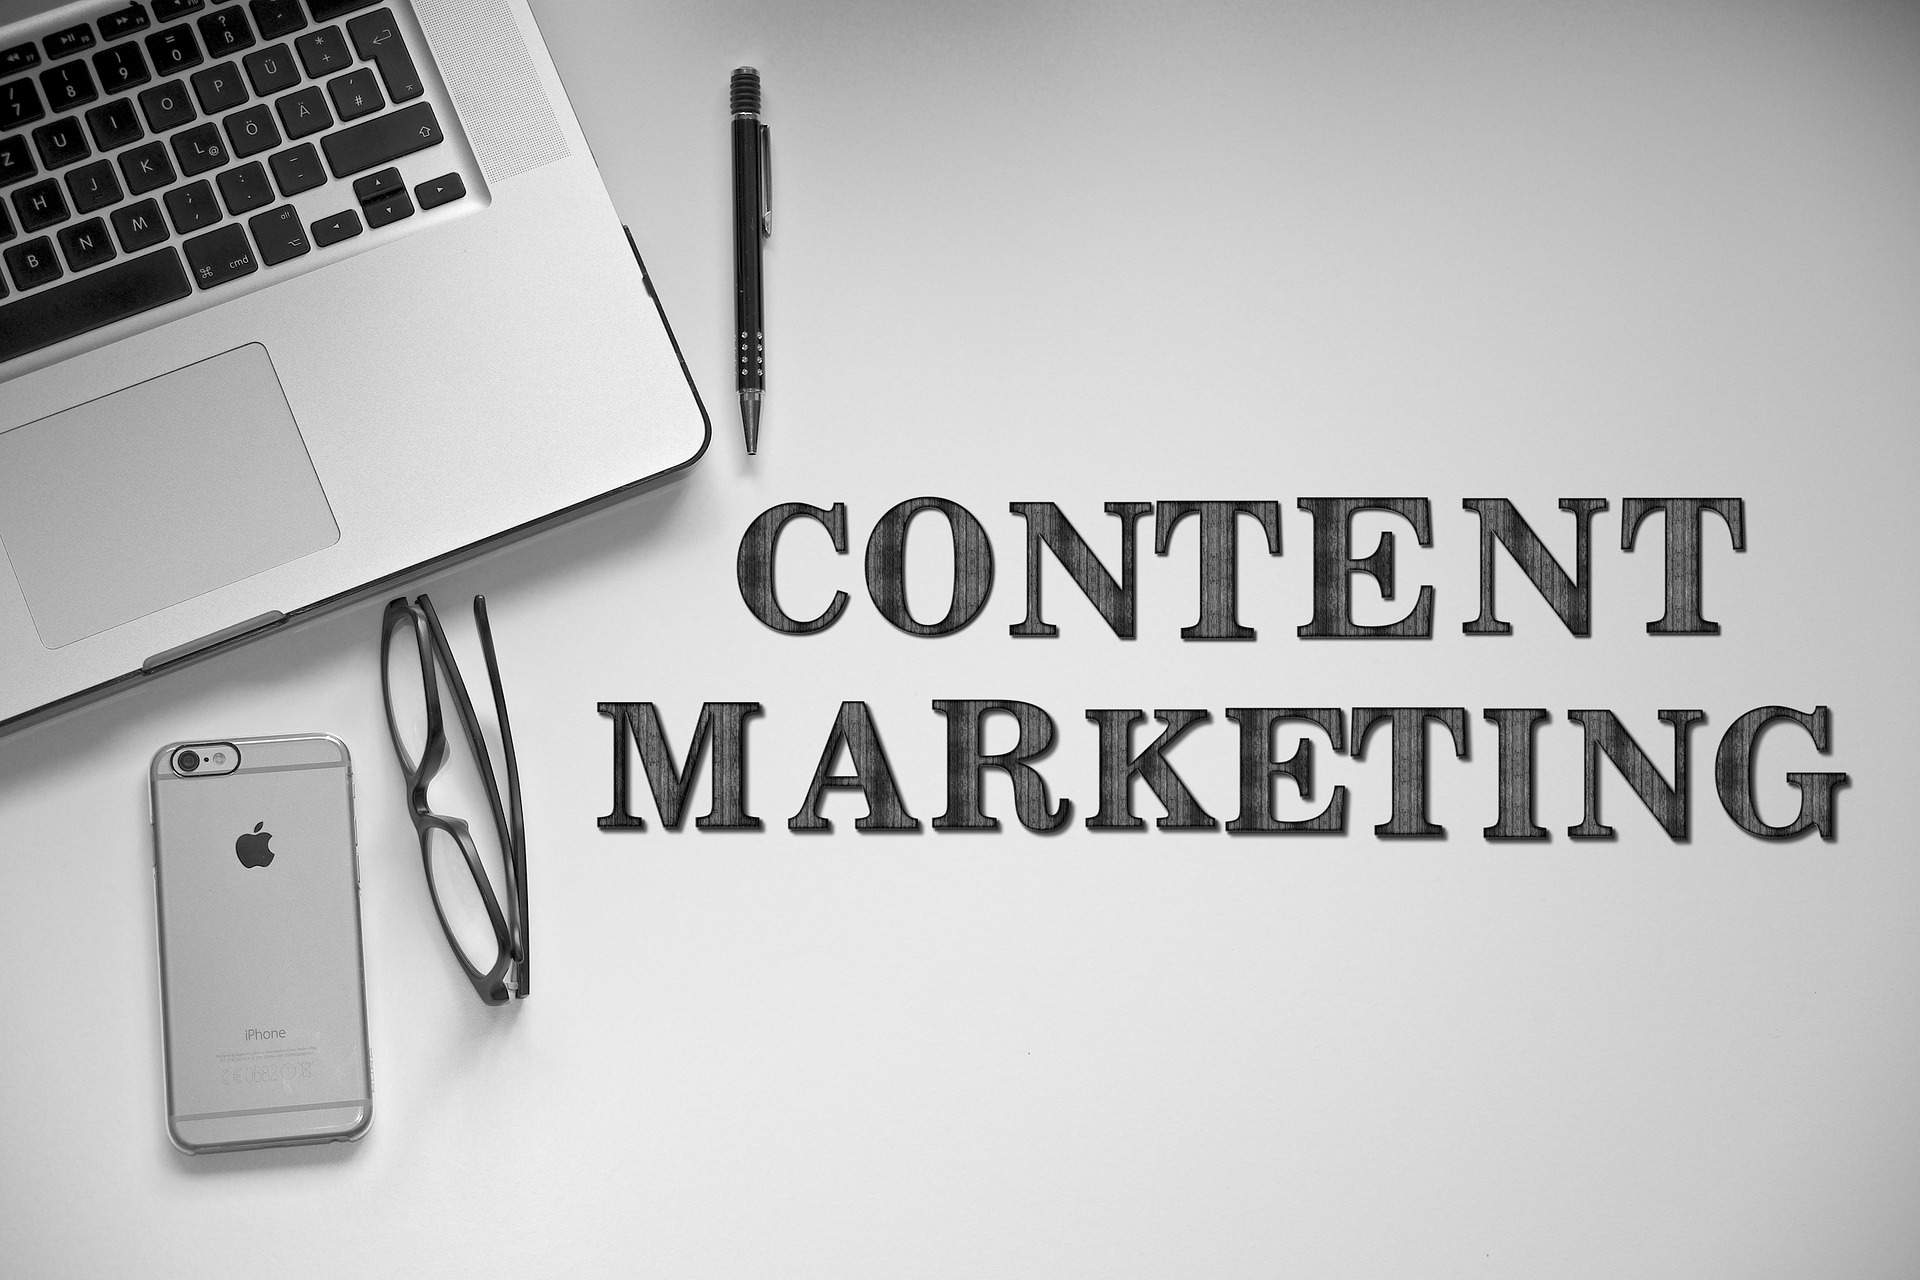 Content Marketing là gì? Mô tả công việc của nhân viên Content Marketing